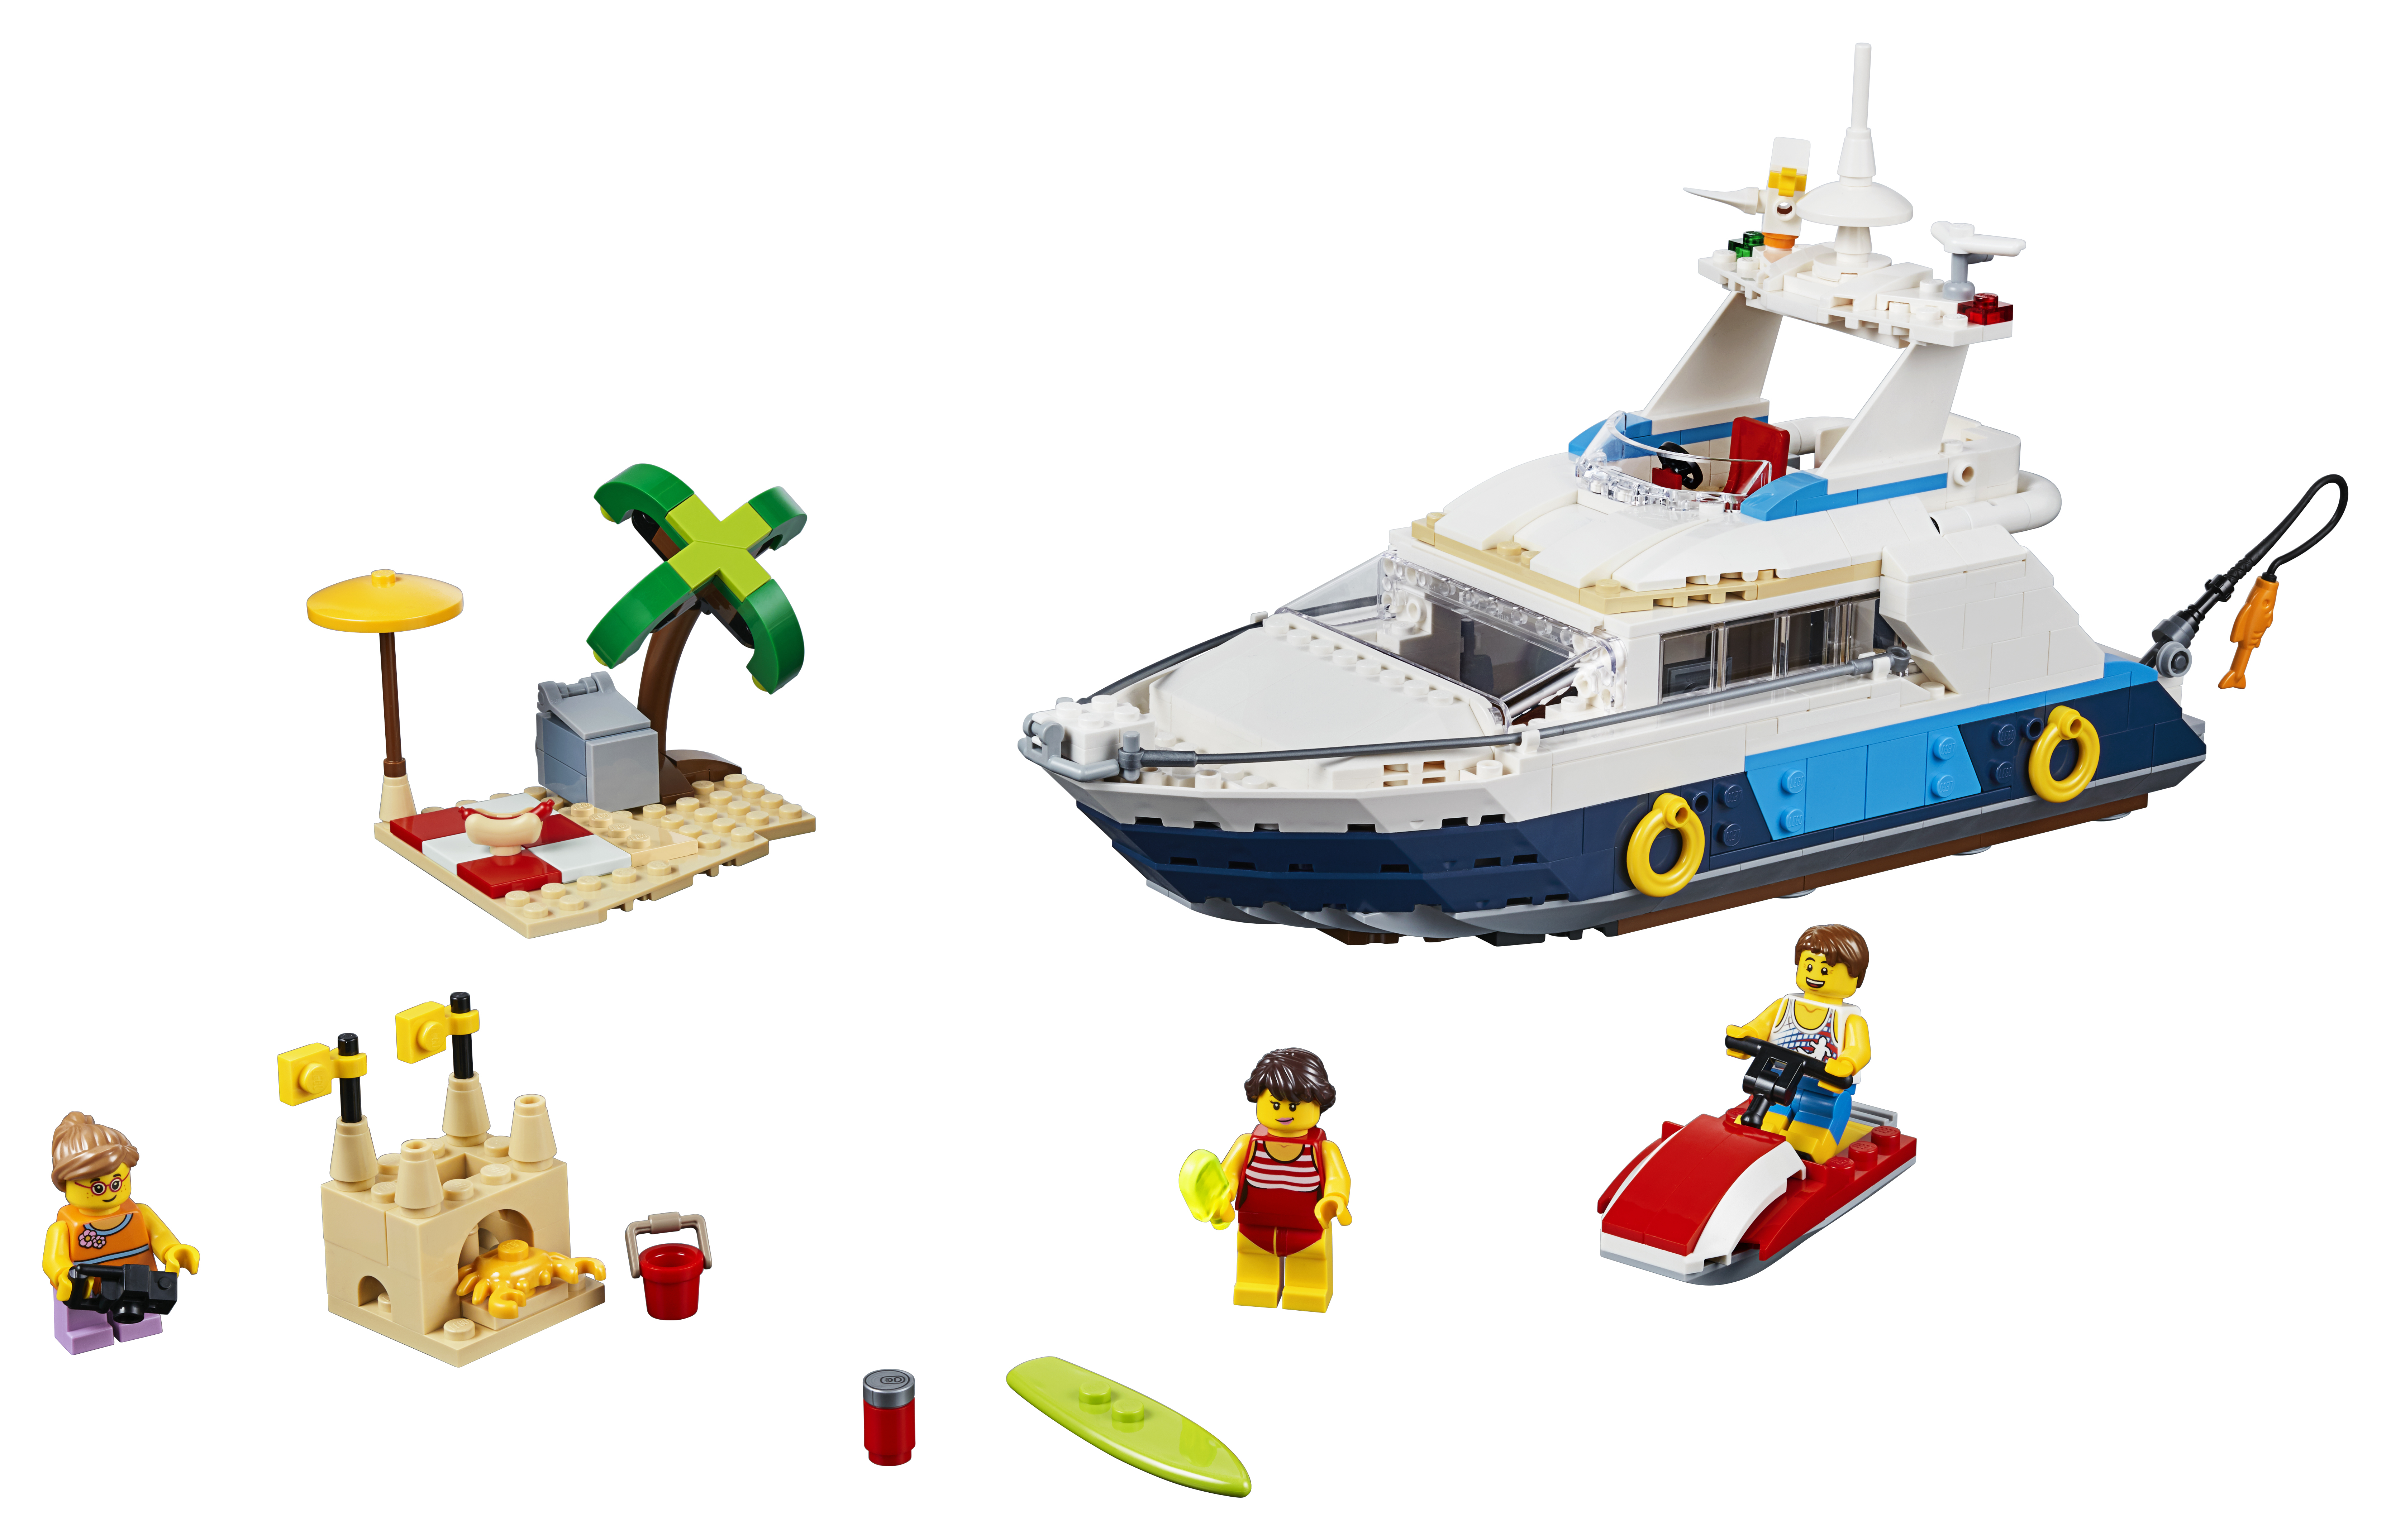 LEGO Creator Abenteuer auf der Yacht - 31083